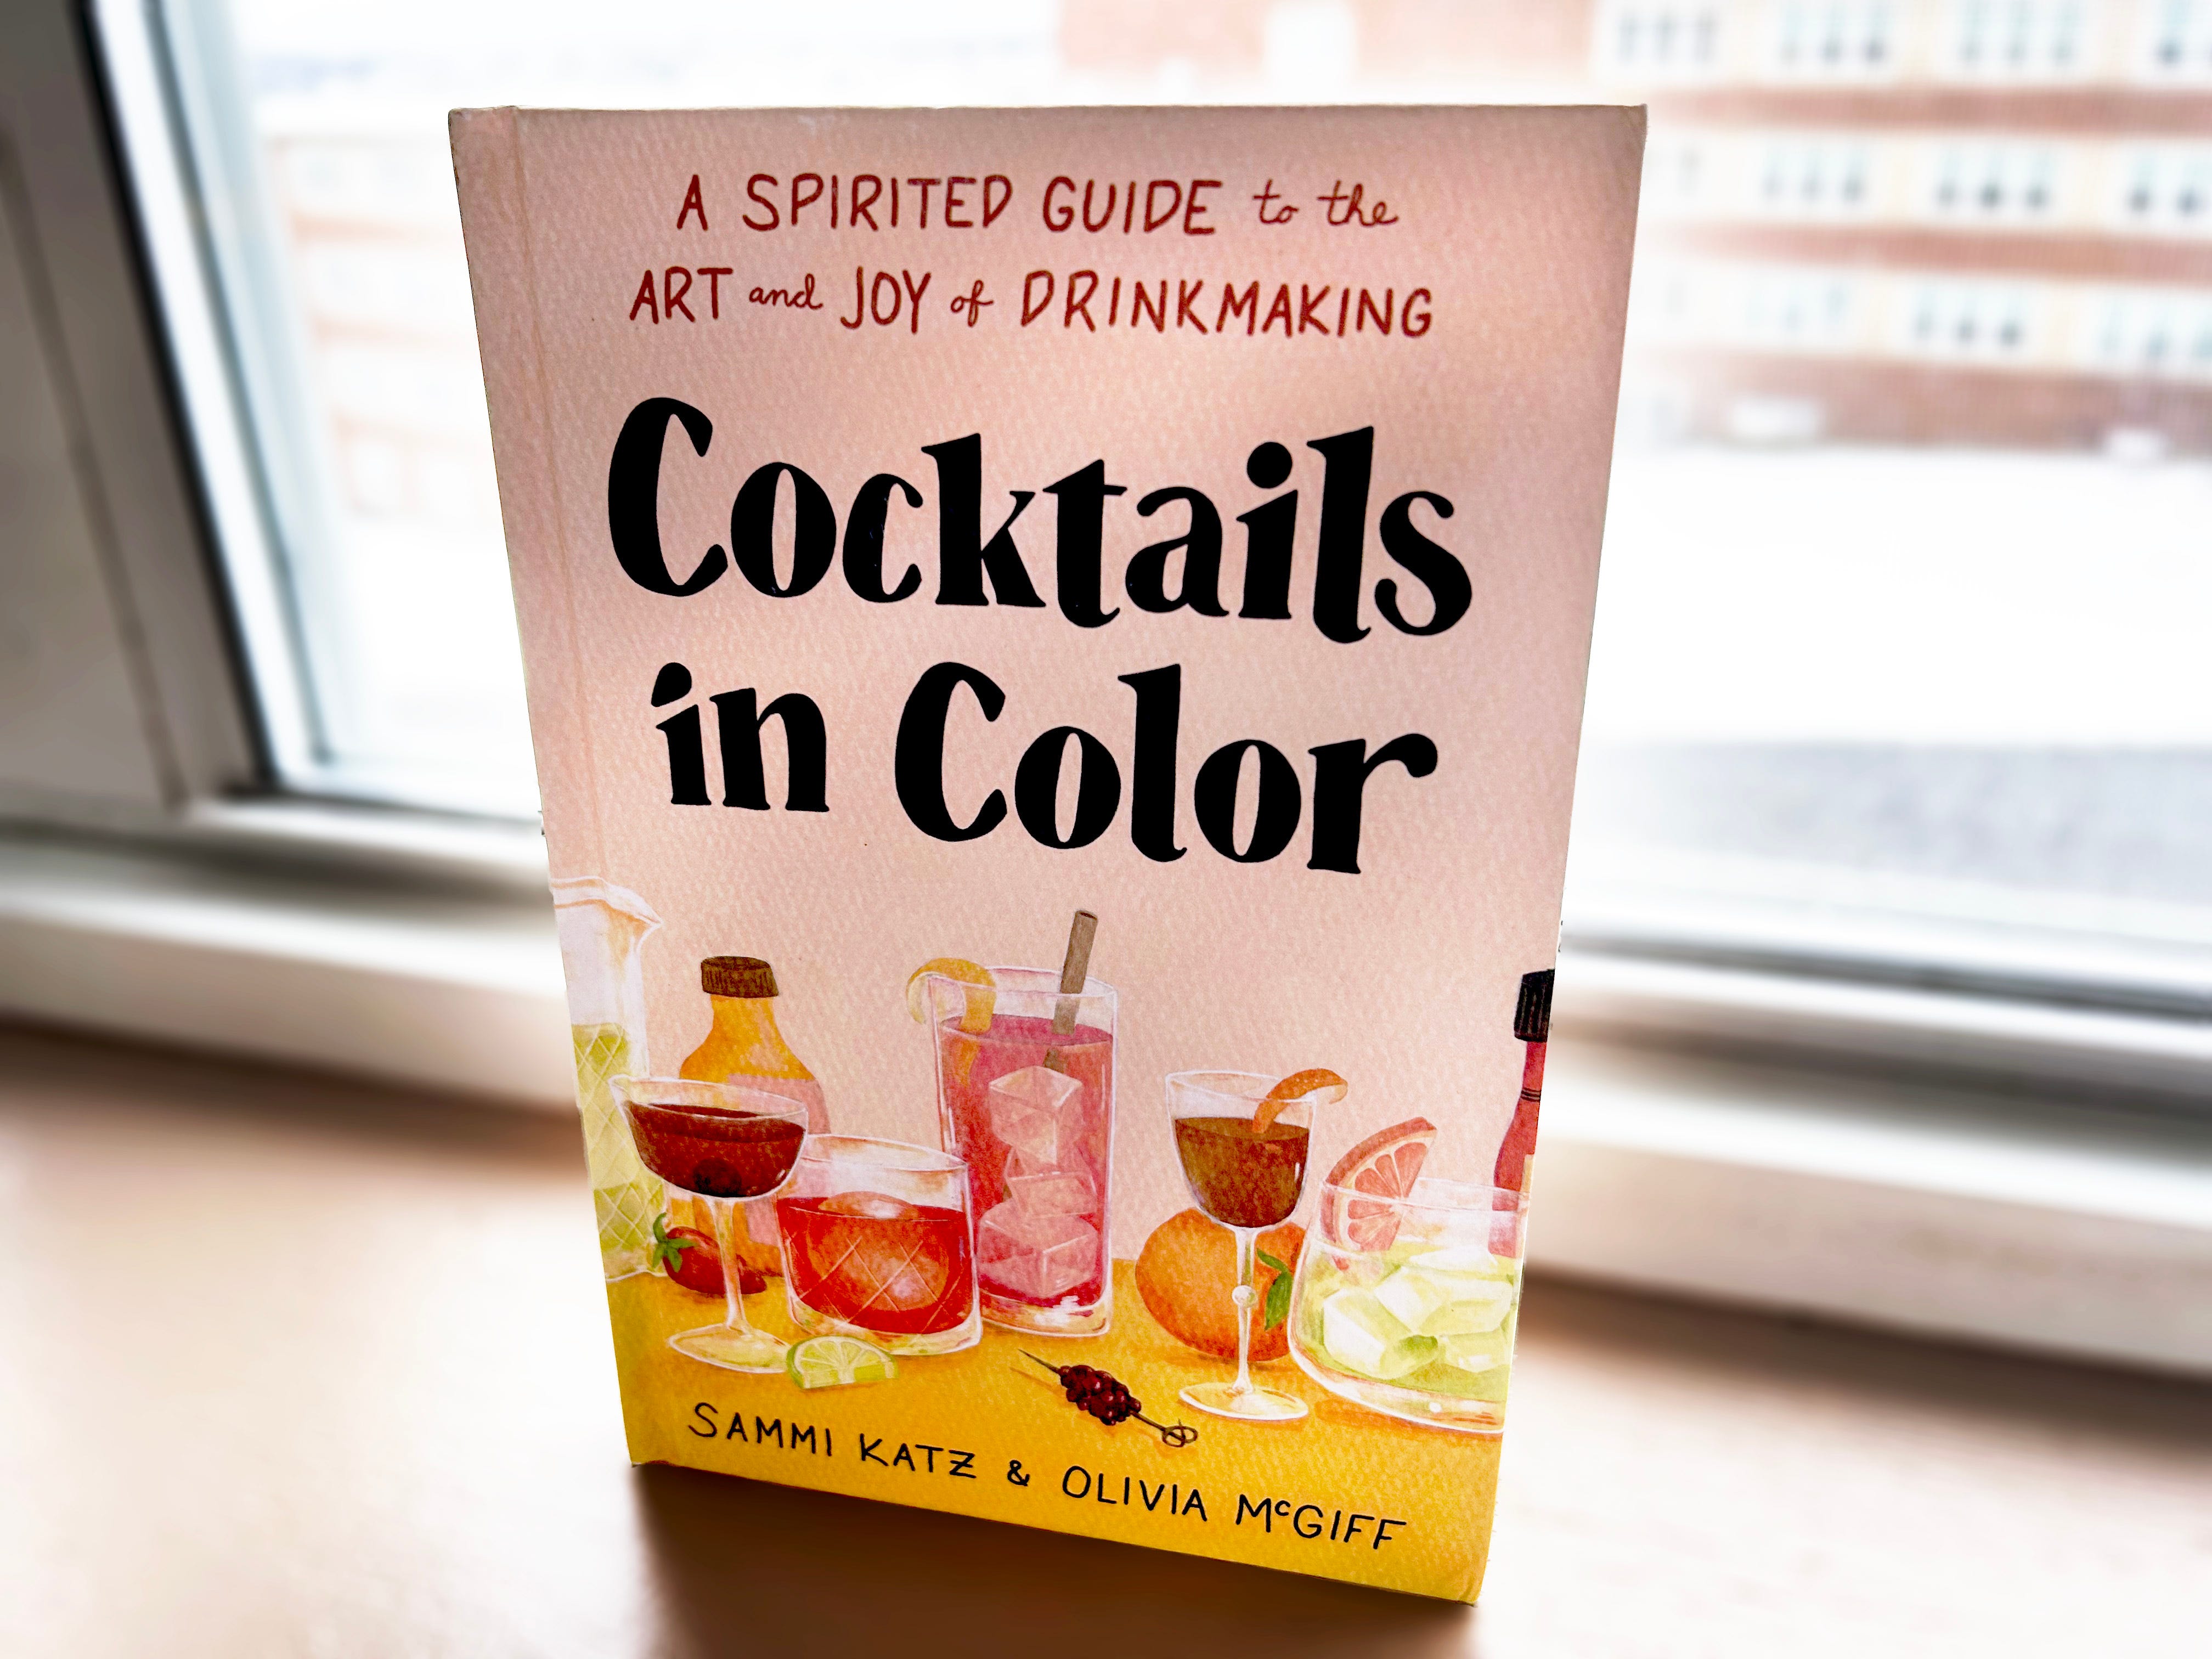 Auf einem Holzbrett neben einem Fenster liegt ein Buch mit dem Titel „Cocktails in Colour“ mit rosa Hintergrund und Abbildungen bunter Cocktails